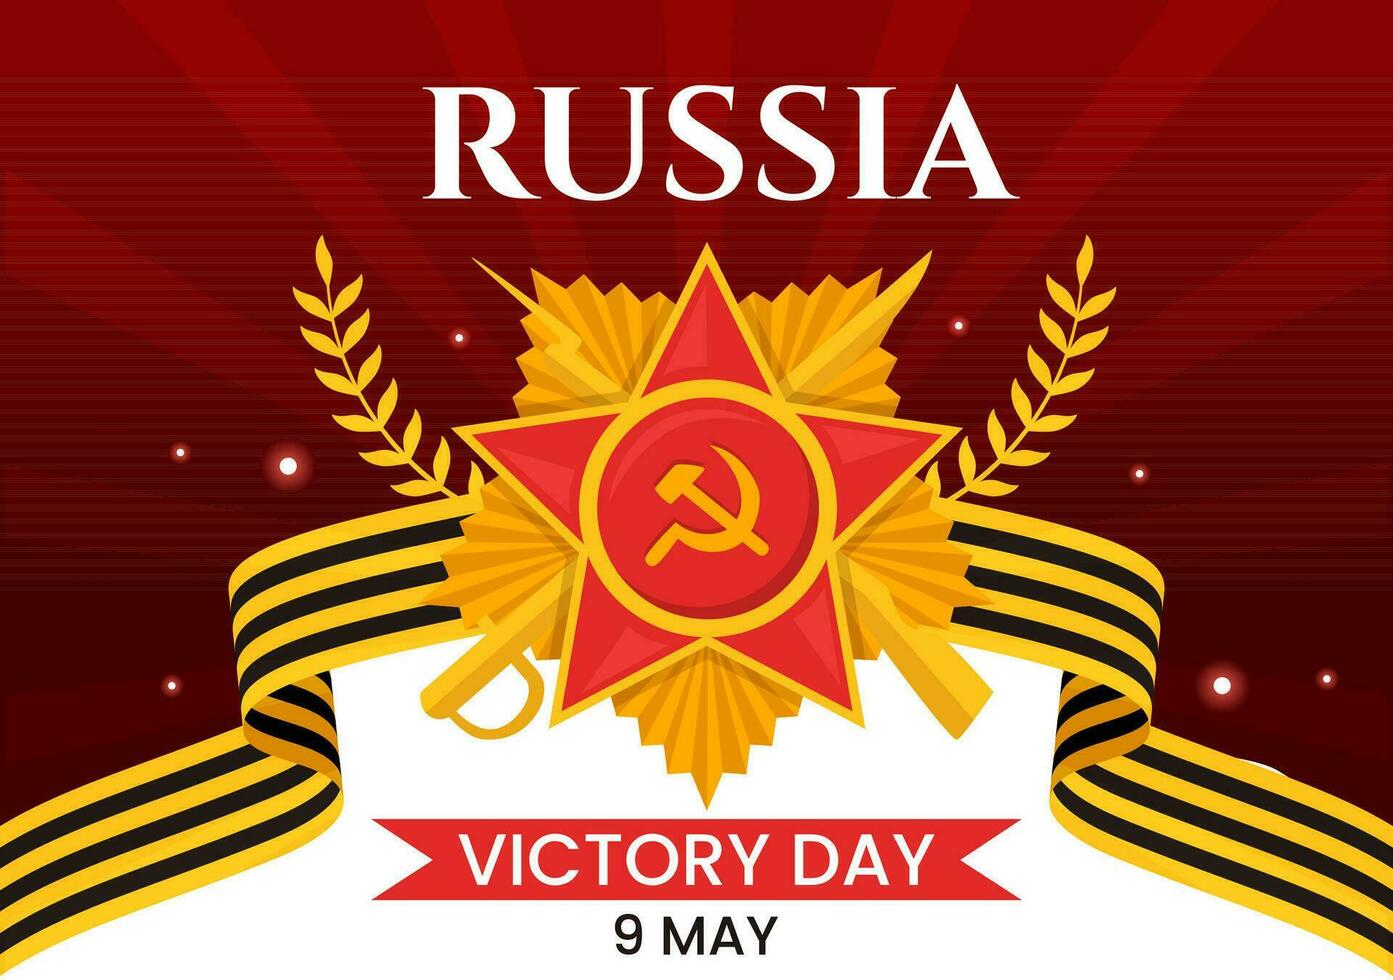 Russland Sieg Tag Vektor Illustration auf kann 9 mit Medaille Star von das Held, großartig patriotisch Krieg und Band Gelb schwarz Farbe im eben Hintergrund